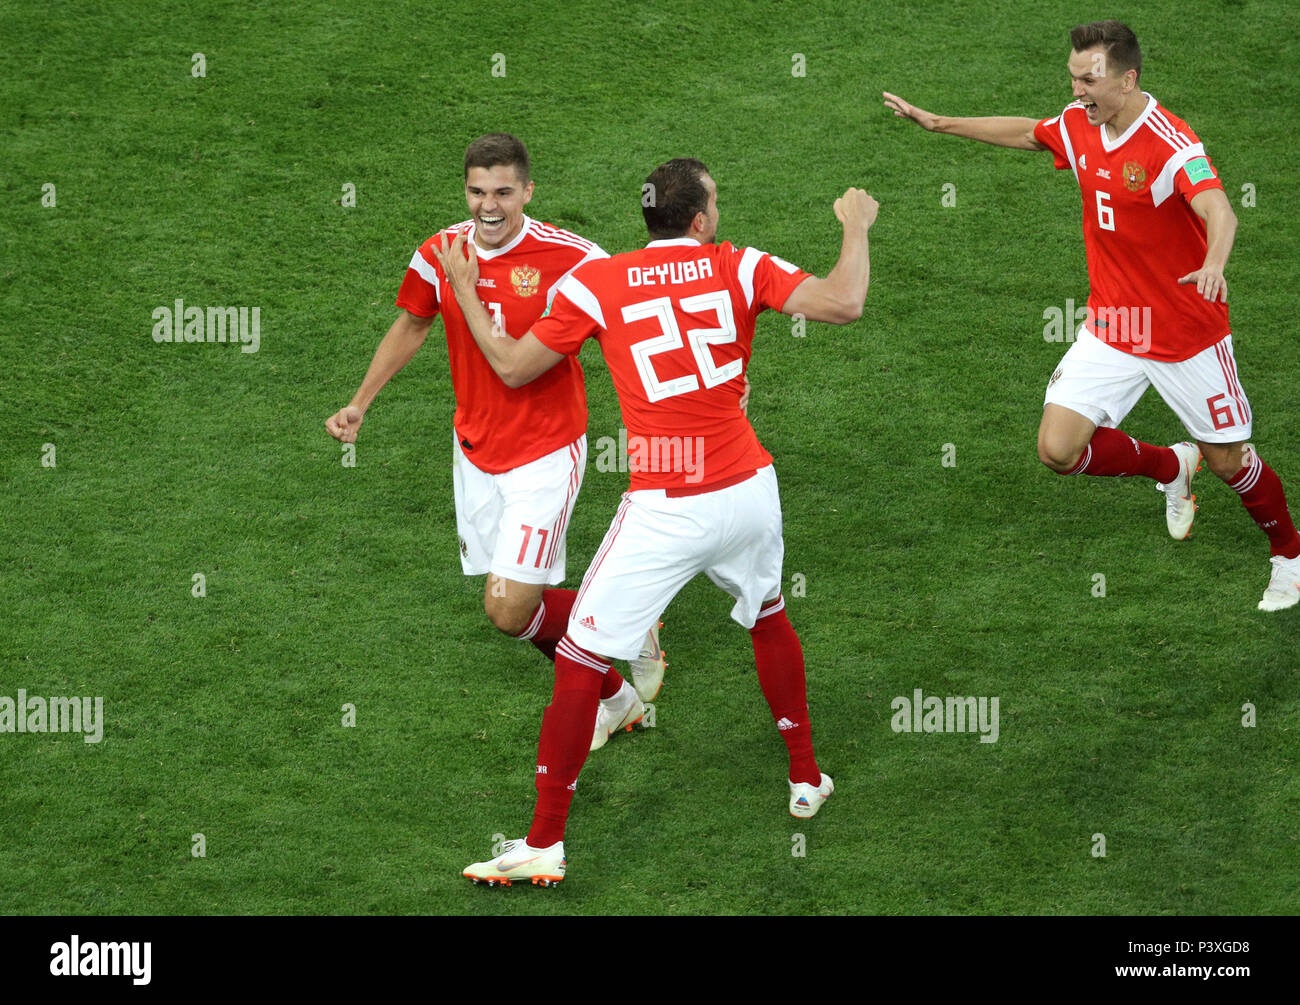 La Russie (de gauche à droite), Artem Dzyuba Zobnin romain et Denis Cheryshev célébrer après l'Egypte, Ahmed Fathy (pas sur la photo) un but pendant la Coupe du Monde 2018, Groupe d'un match au stade de Saint-Pétersbourg. Banque D'Images